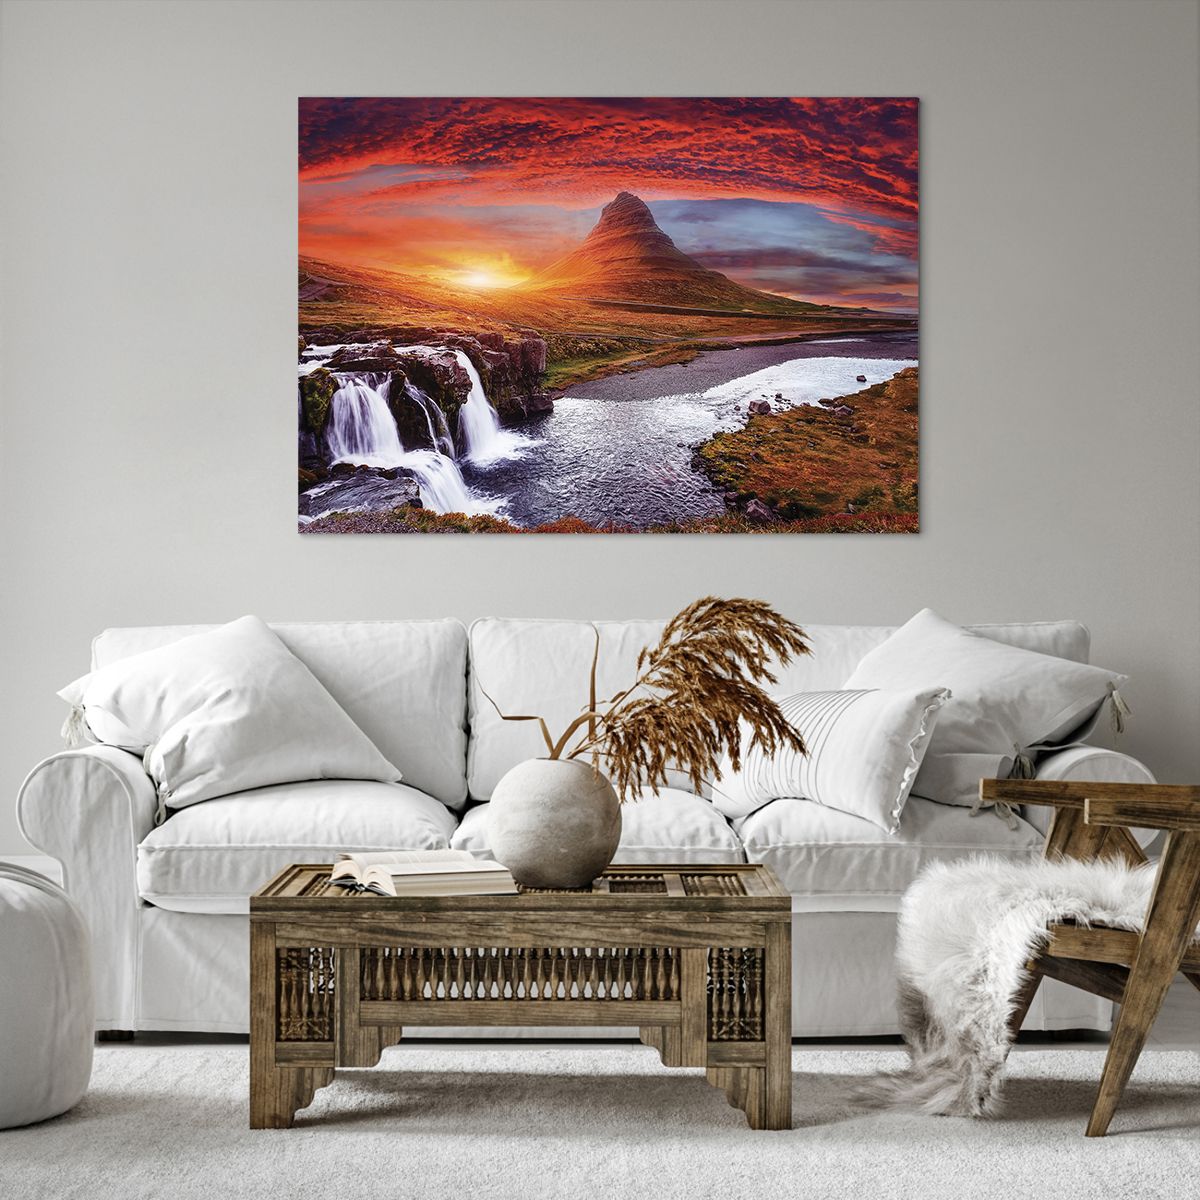 Bild auf Leinwand Landschaft, Bild auf Leinwand Wasserfall, Bild auf Leinwand Island, Bild auf Leinwand Berg Kirkjufell, Bild auf Leinwand Natur